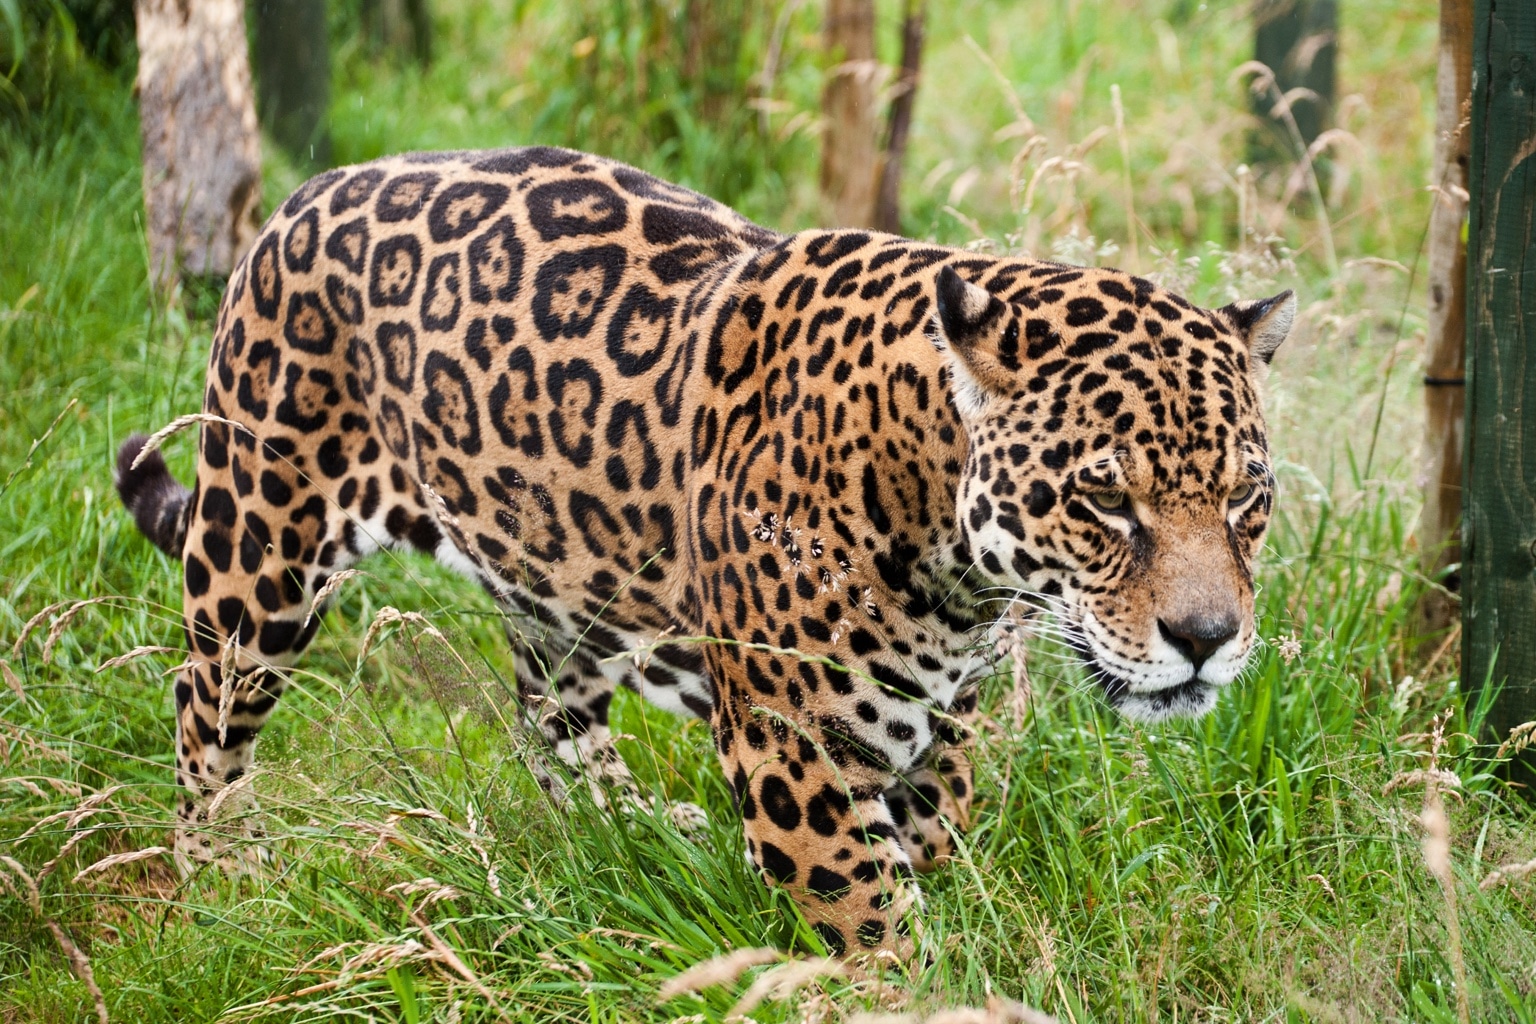 Adopt a Jaguar